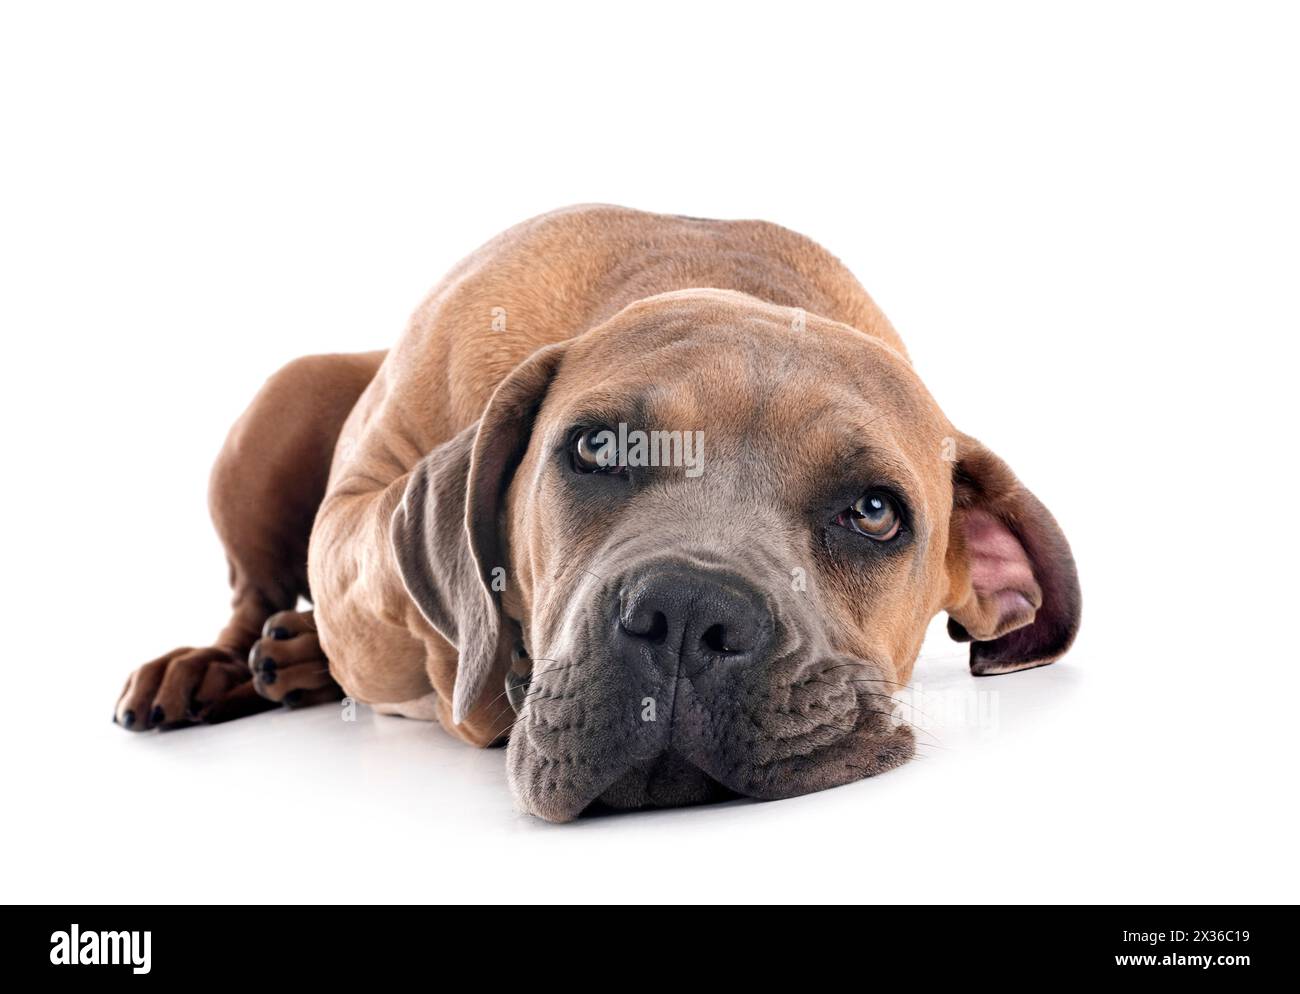 Cucciolo di Mastino italiano davanti a uno sfondo bianco Foto Stock